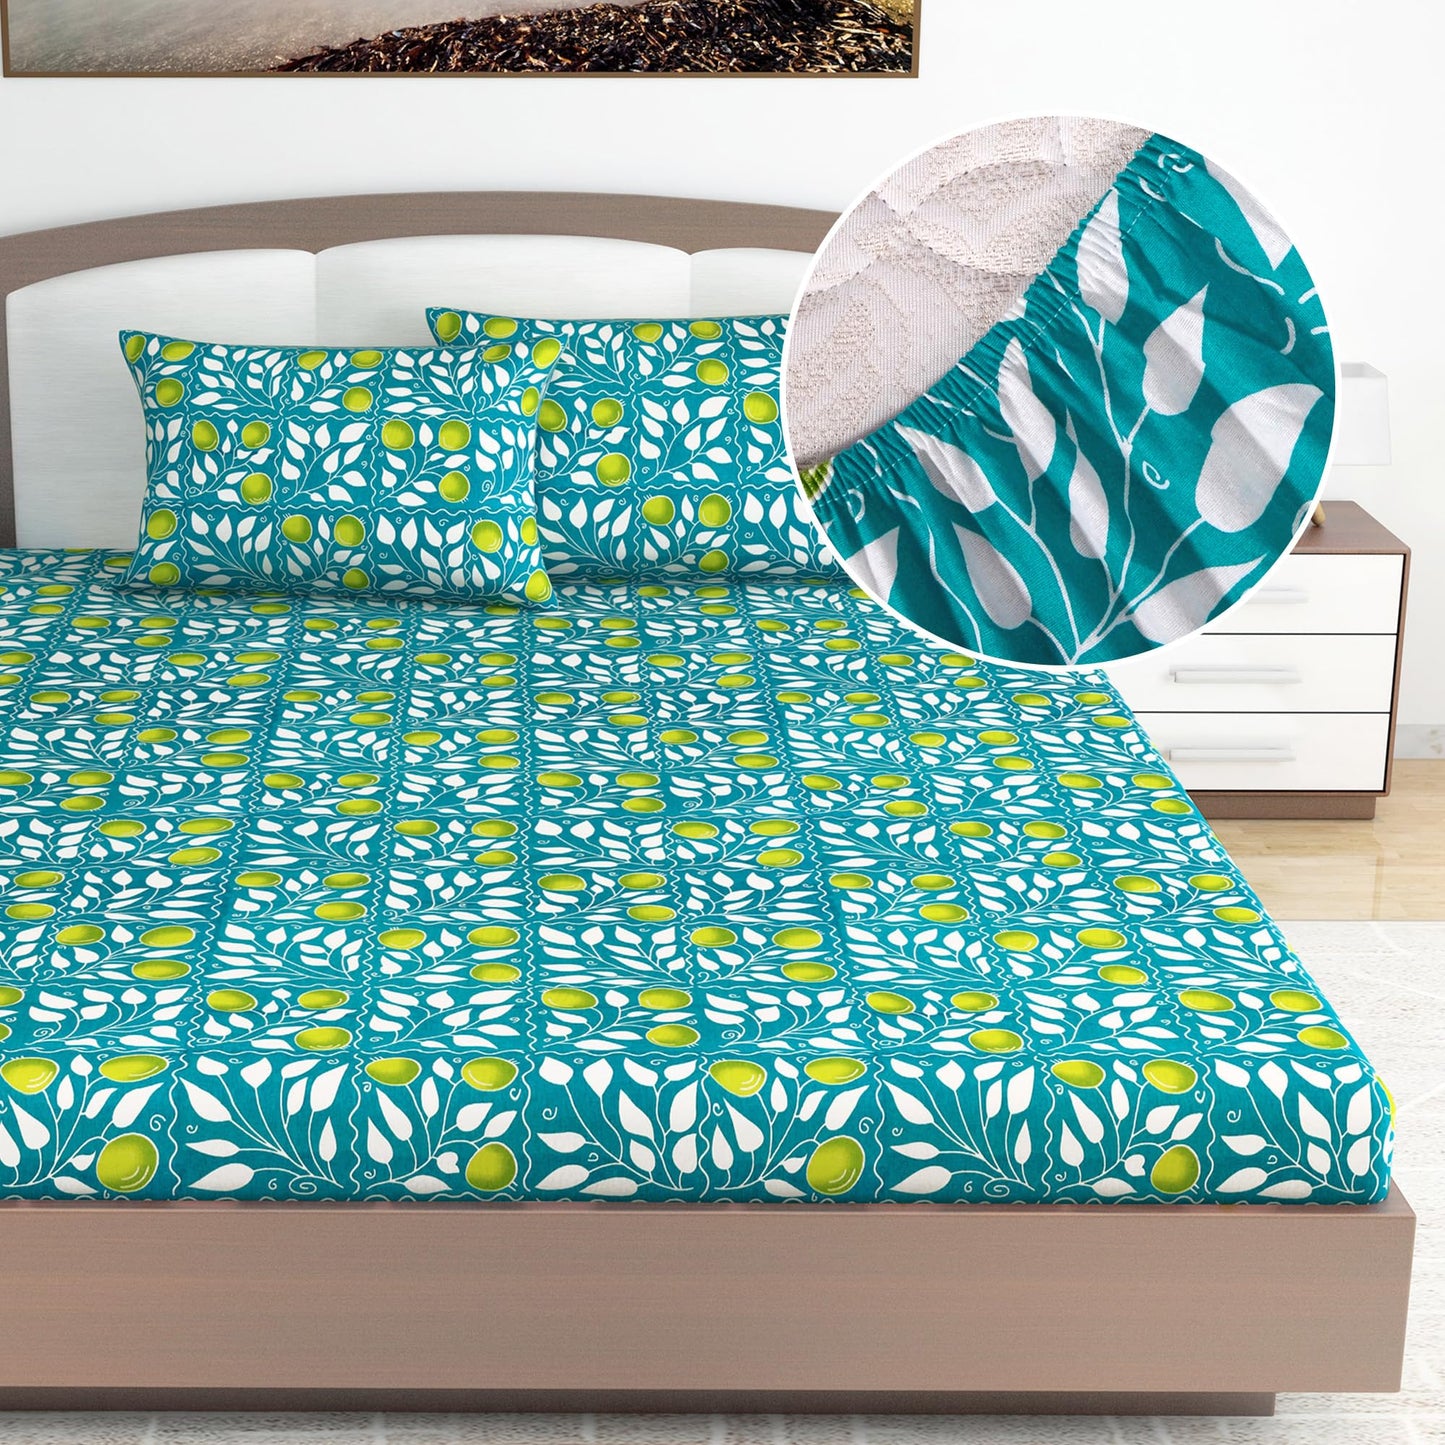 Green Elegant Floral Print Elastic Fitted King Bed Bedsheet